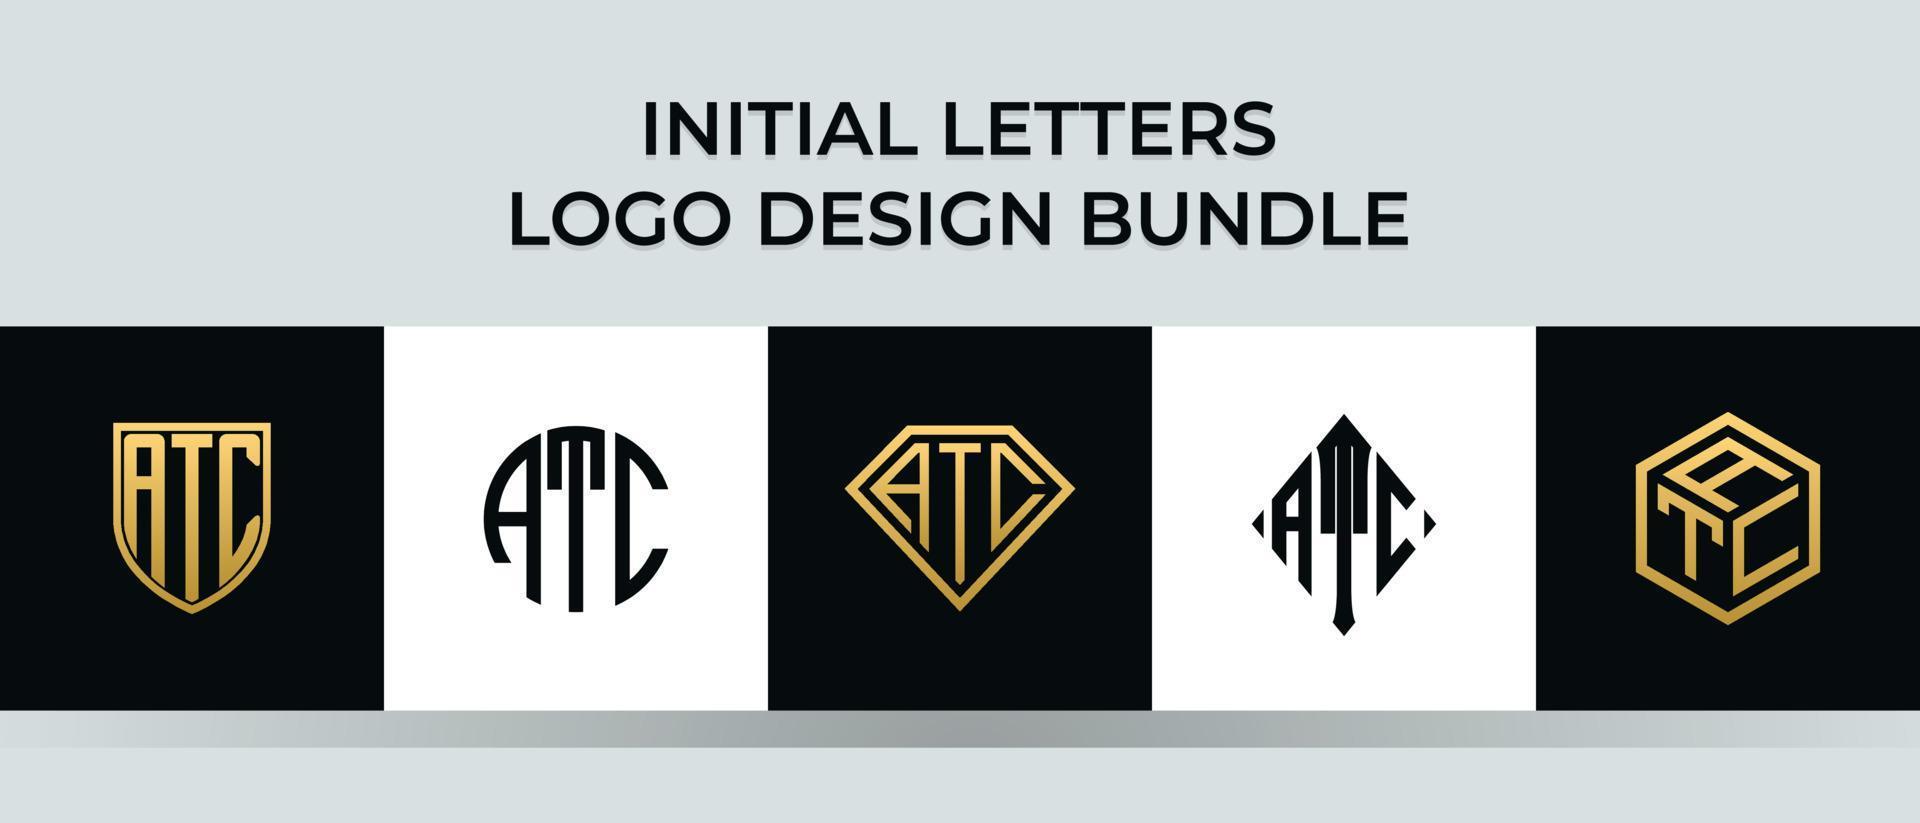 Initial letters ATC logo designs Bundle vector